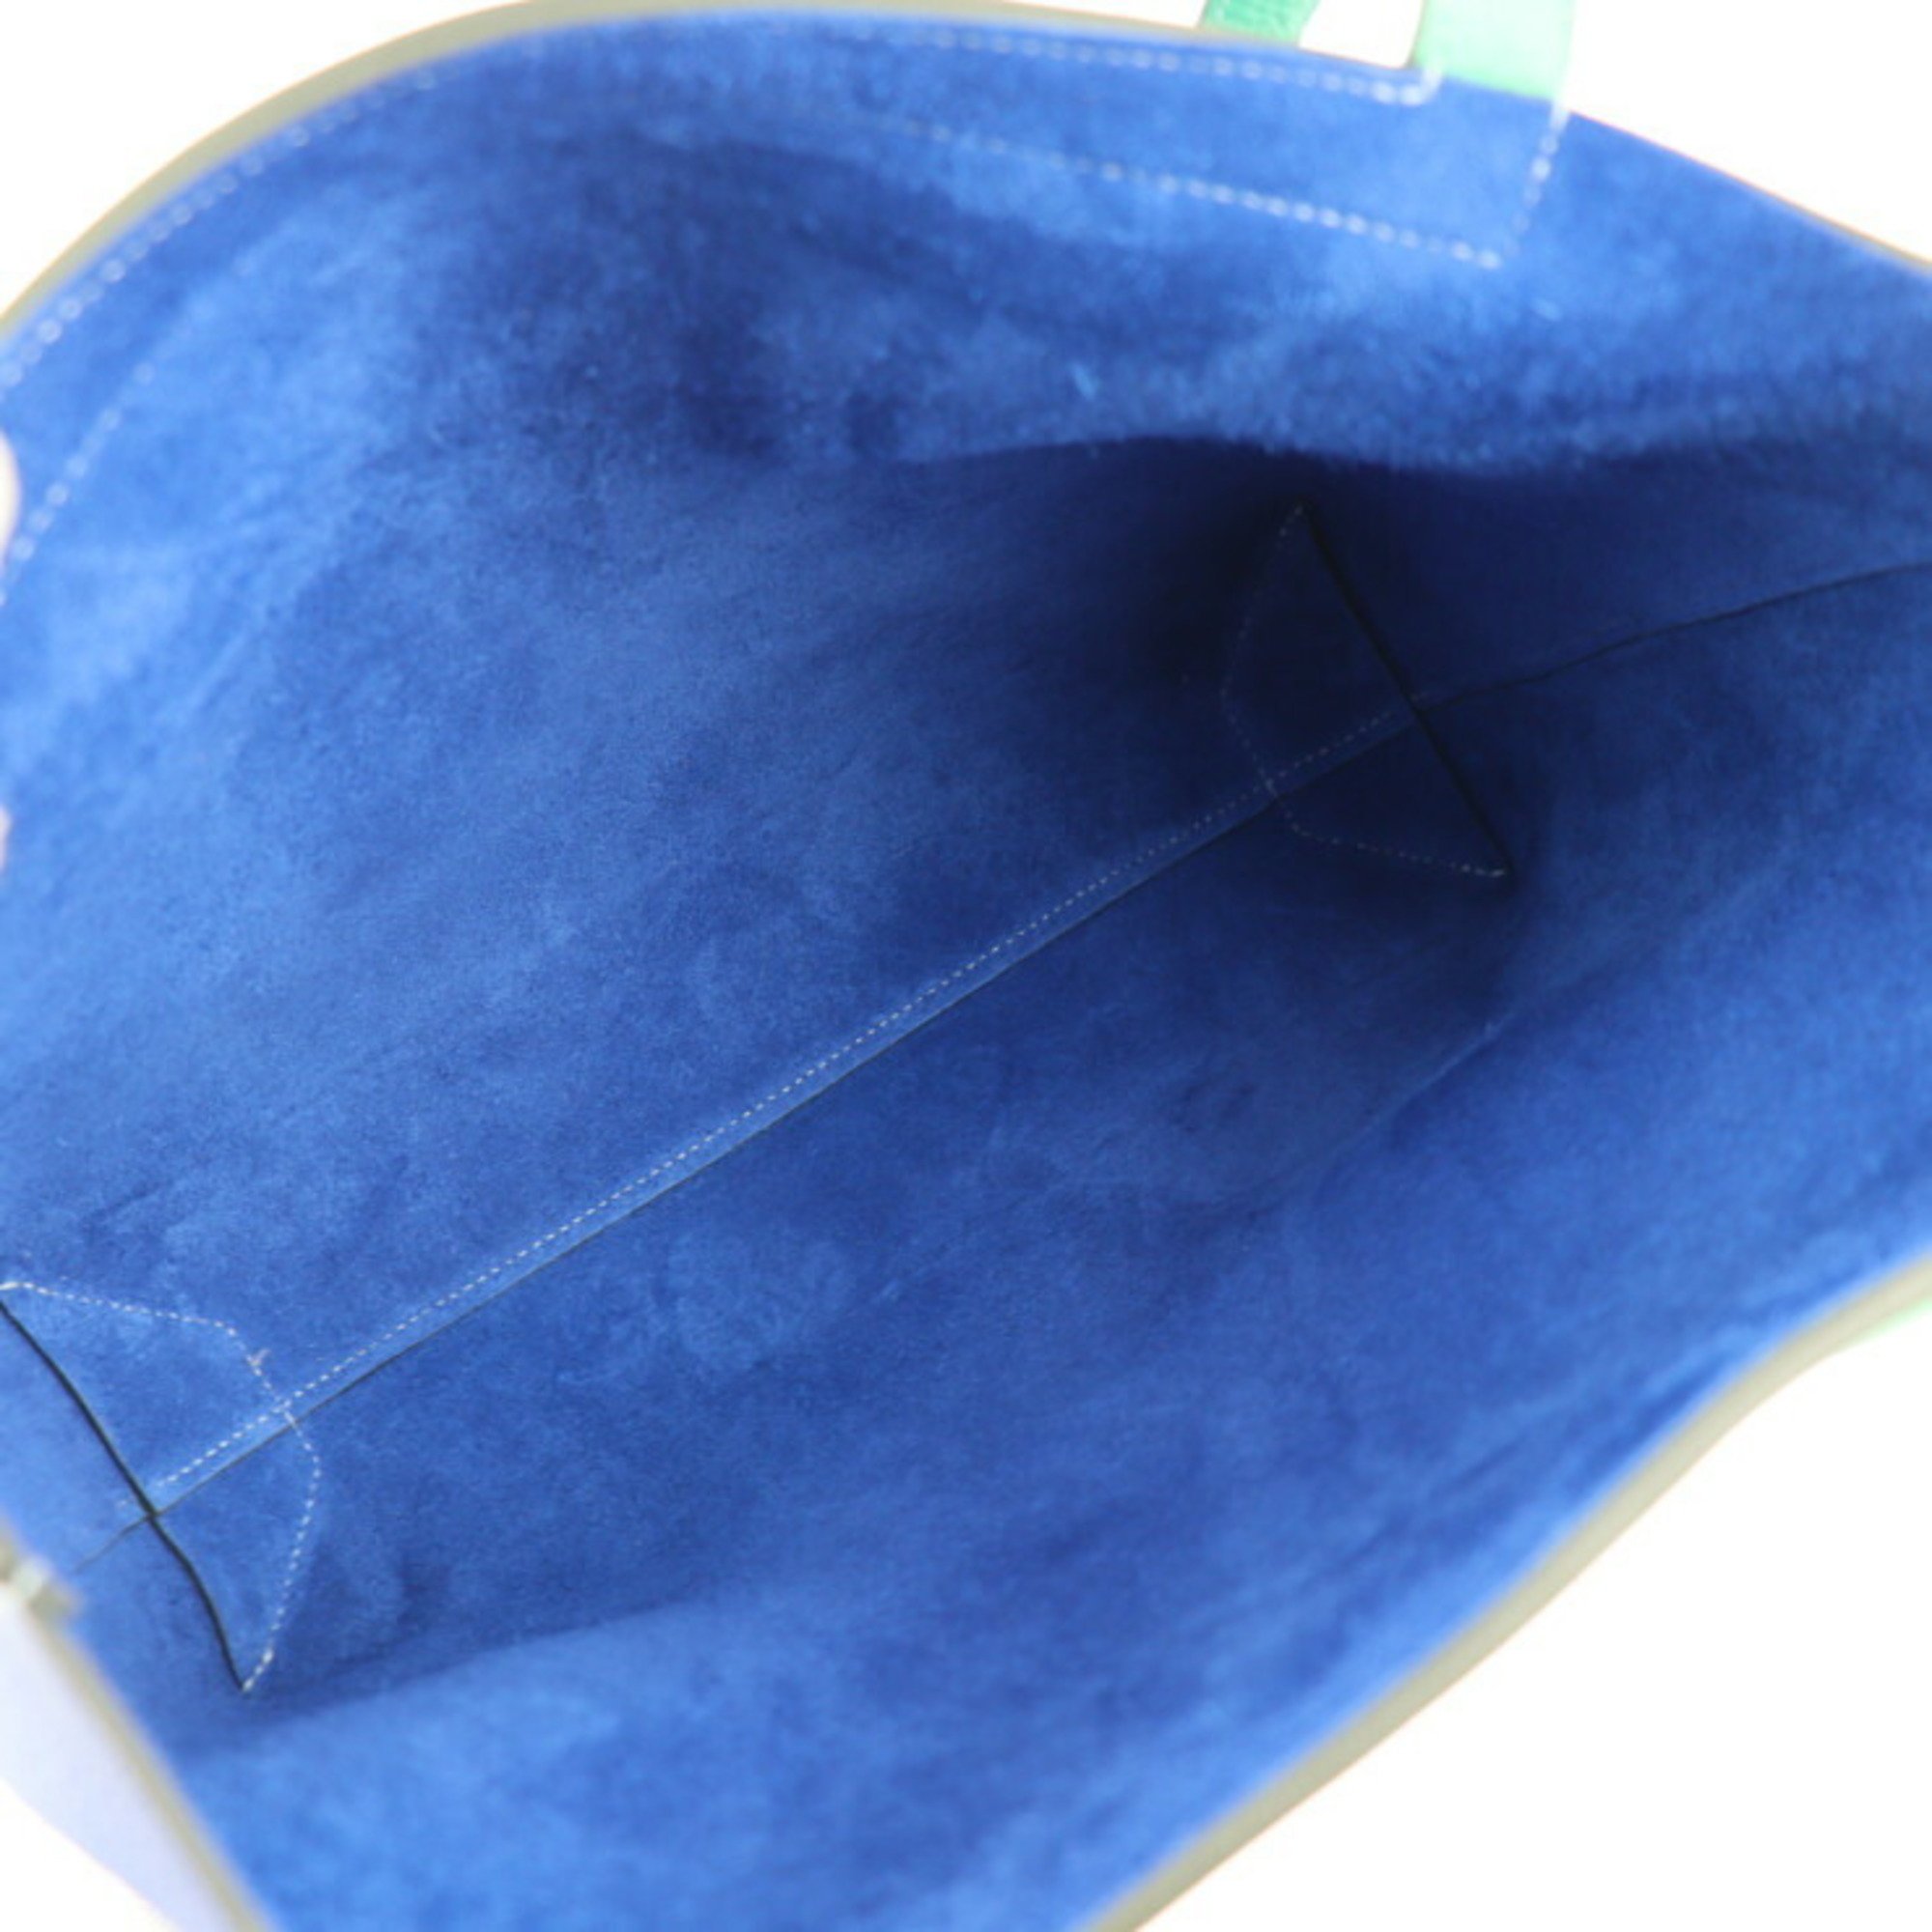 HERMES Cabasserie 31 Tote Bag Taurillon Clemence Royal Blue Mint Shoulder Z engraved